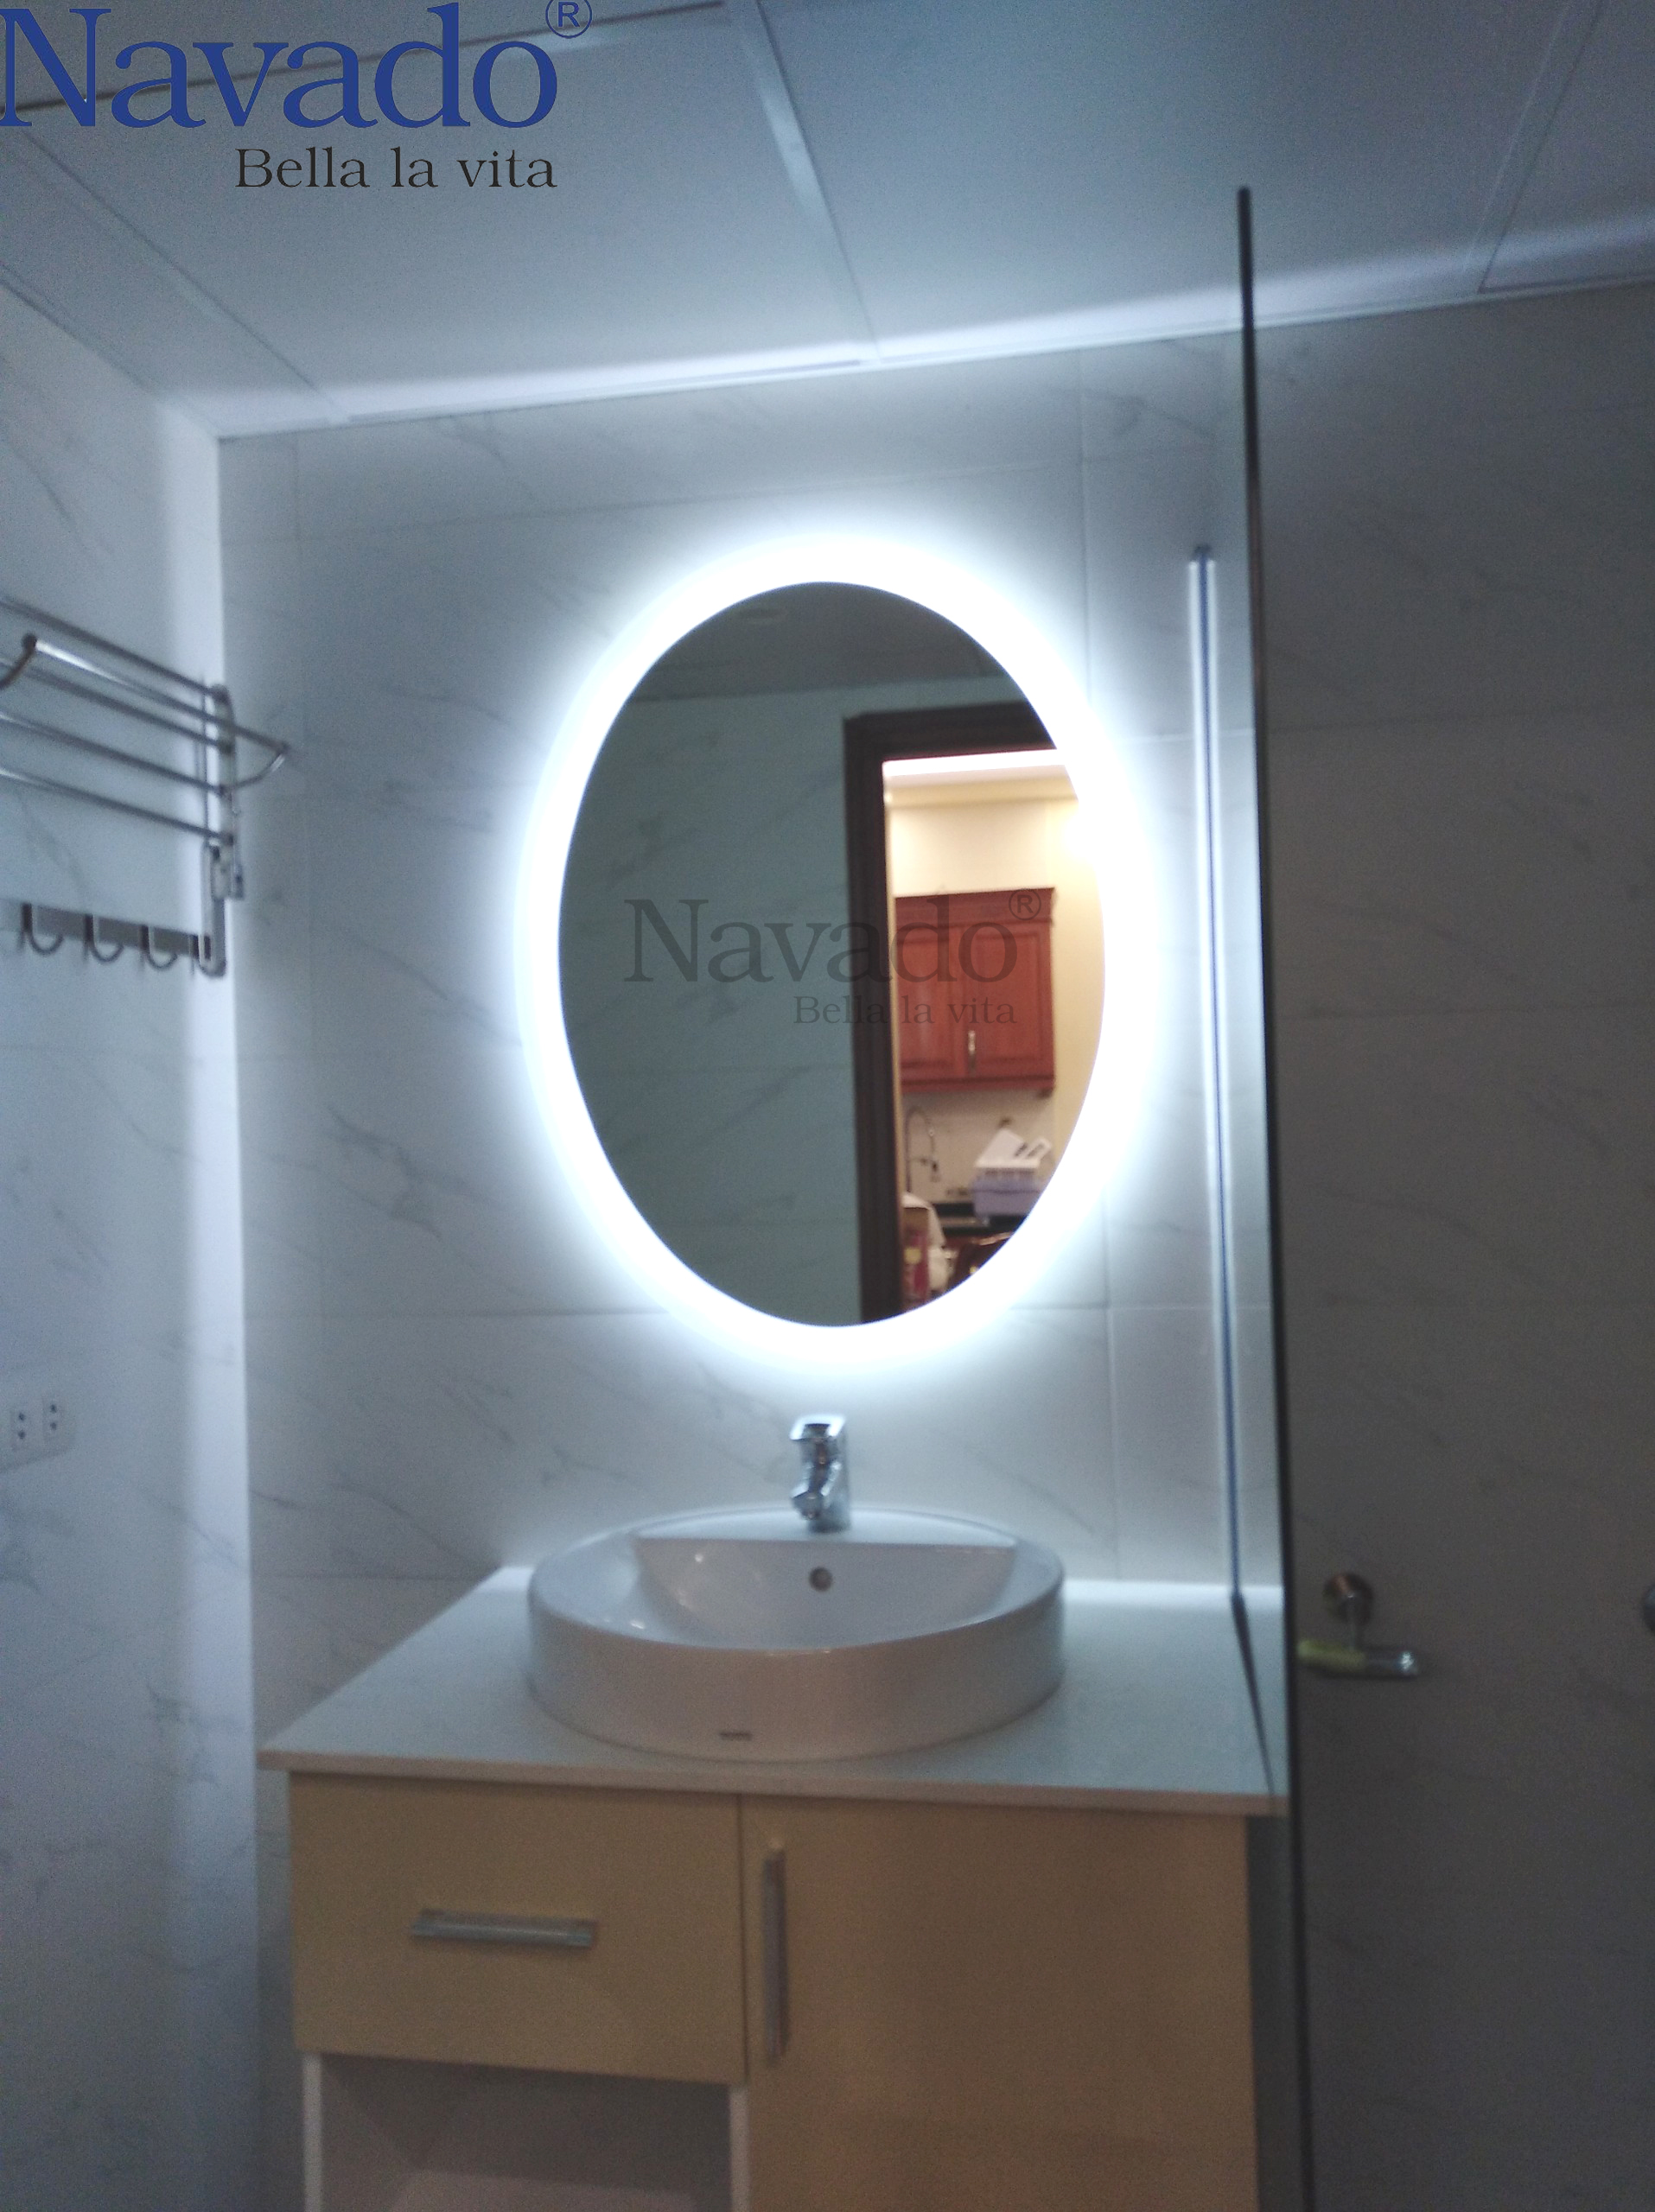 Loại gương nhà tắm Navado đèn led mới nhất đã đến! Với thiết kế hiện đại và bộ đèn led sáng tạo, gương sẽ giúp cho không gian phòng tắm của bạn trở nên sang trọng và đẳng cấp hơn bao giờ hết. Hãy để ánh sáng led trong gương Navado ngập tràn phòng tắm của bạn và tạo nên một không gian tươi mới, lạ mắt.